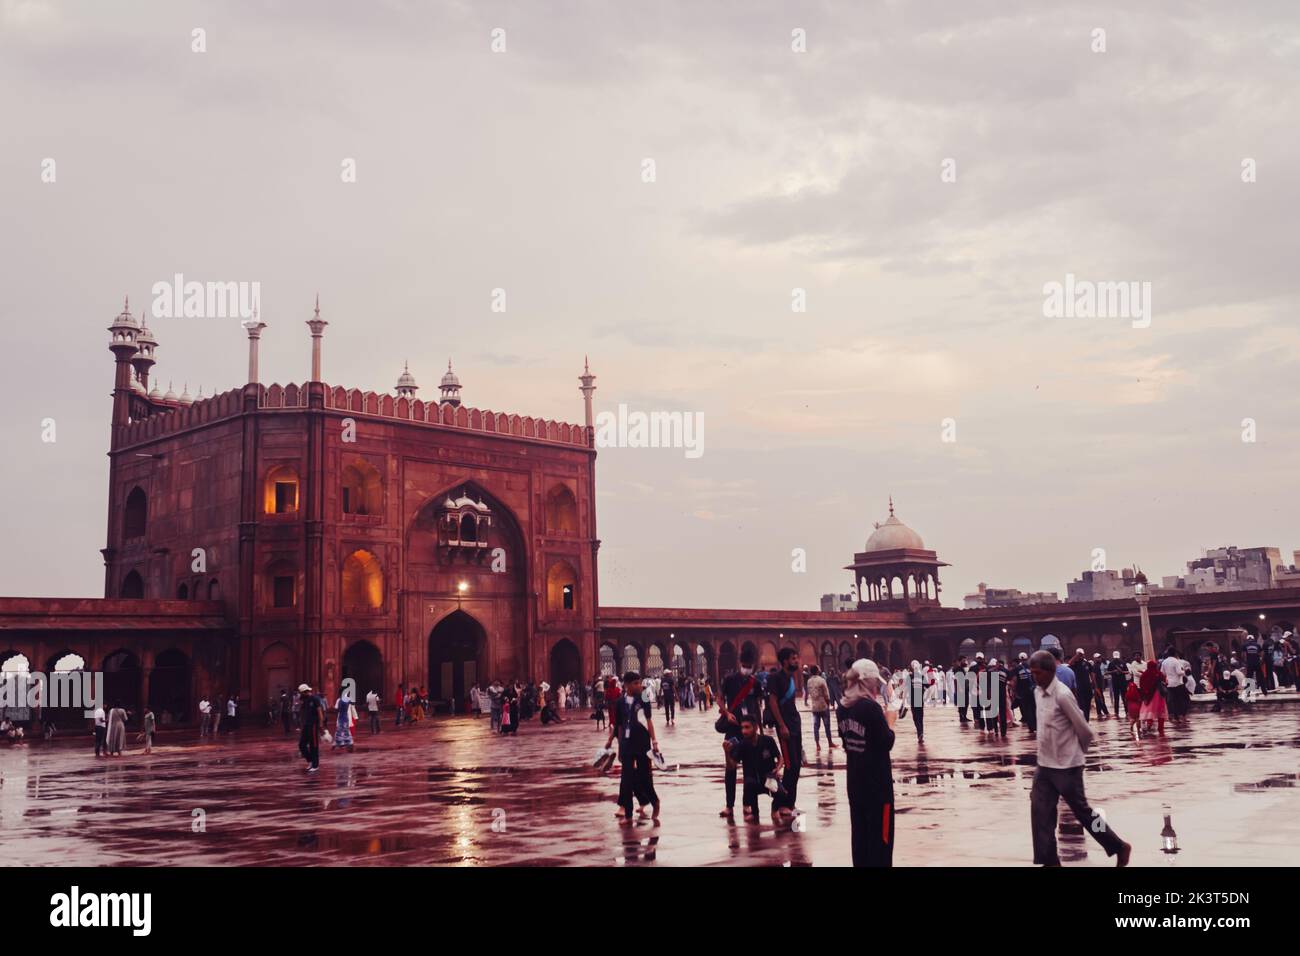 La Jama Masjid de Delhi es una de las mezquitas más grandes de la India Foto de stock